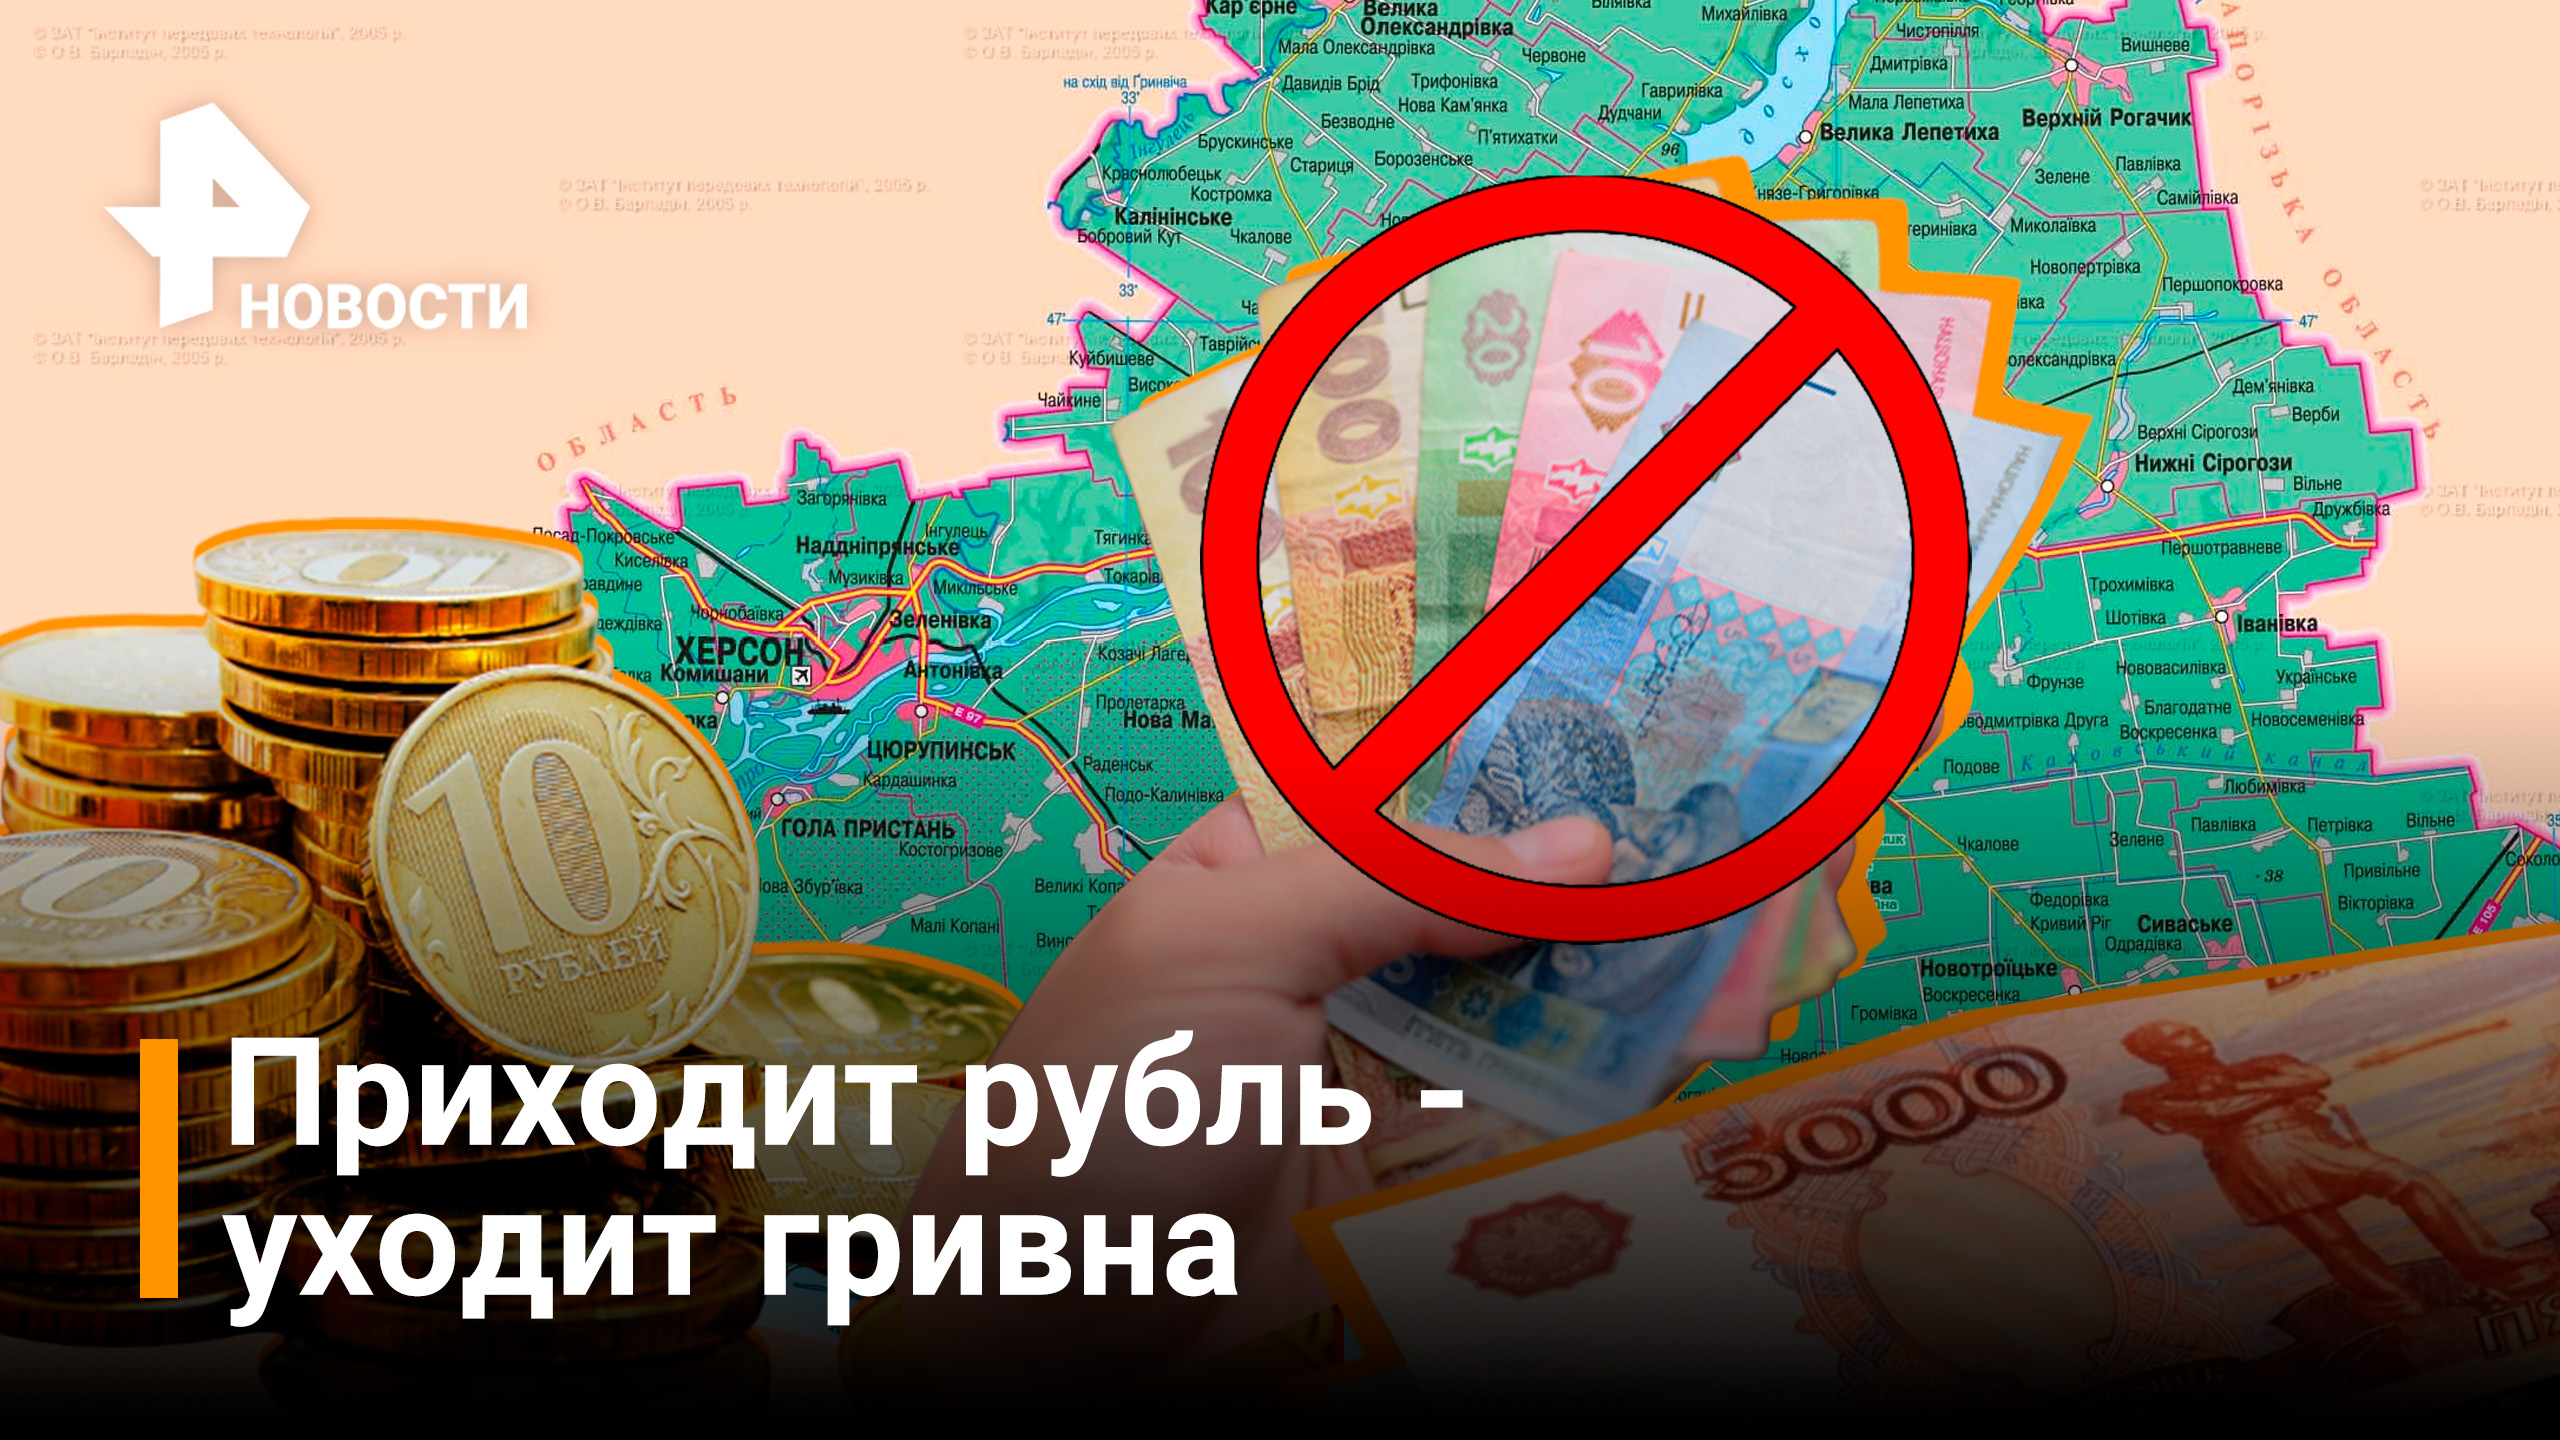 Херсонская область начинает переход на рубли / Новости РЕН